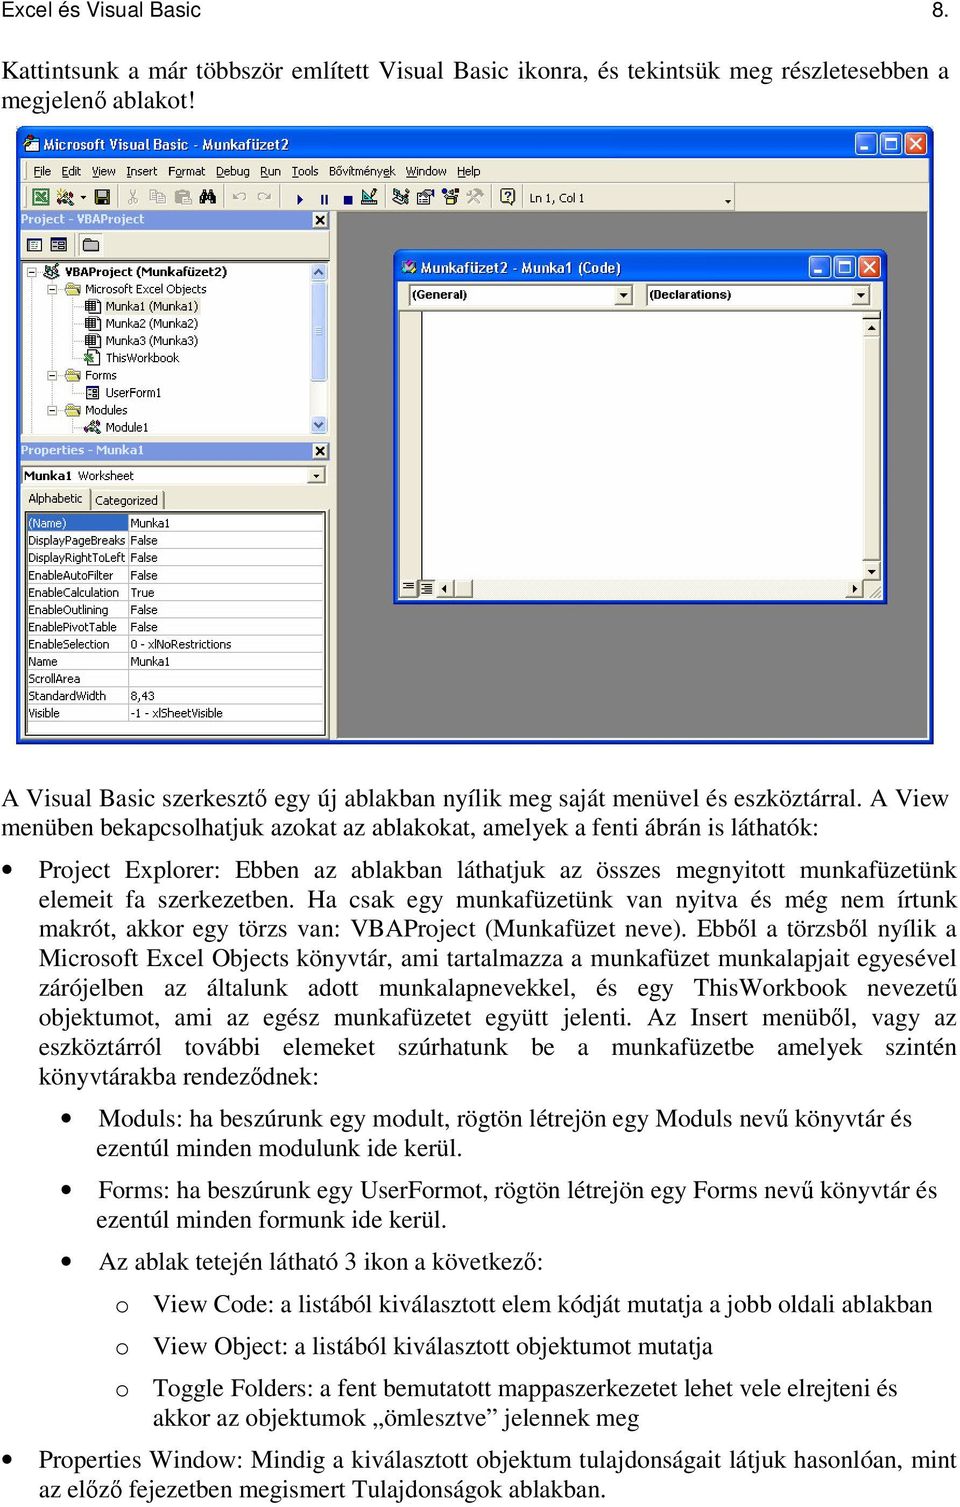 Visual Basic és Excel makrók - PDF Ingyenes letöltés